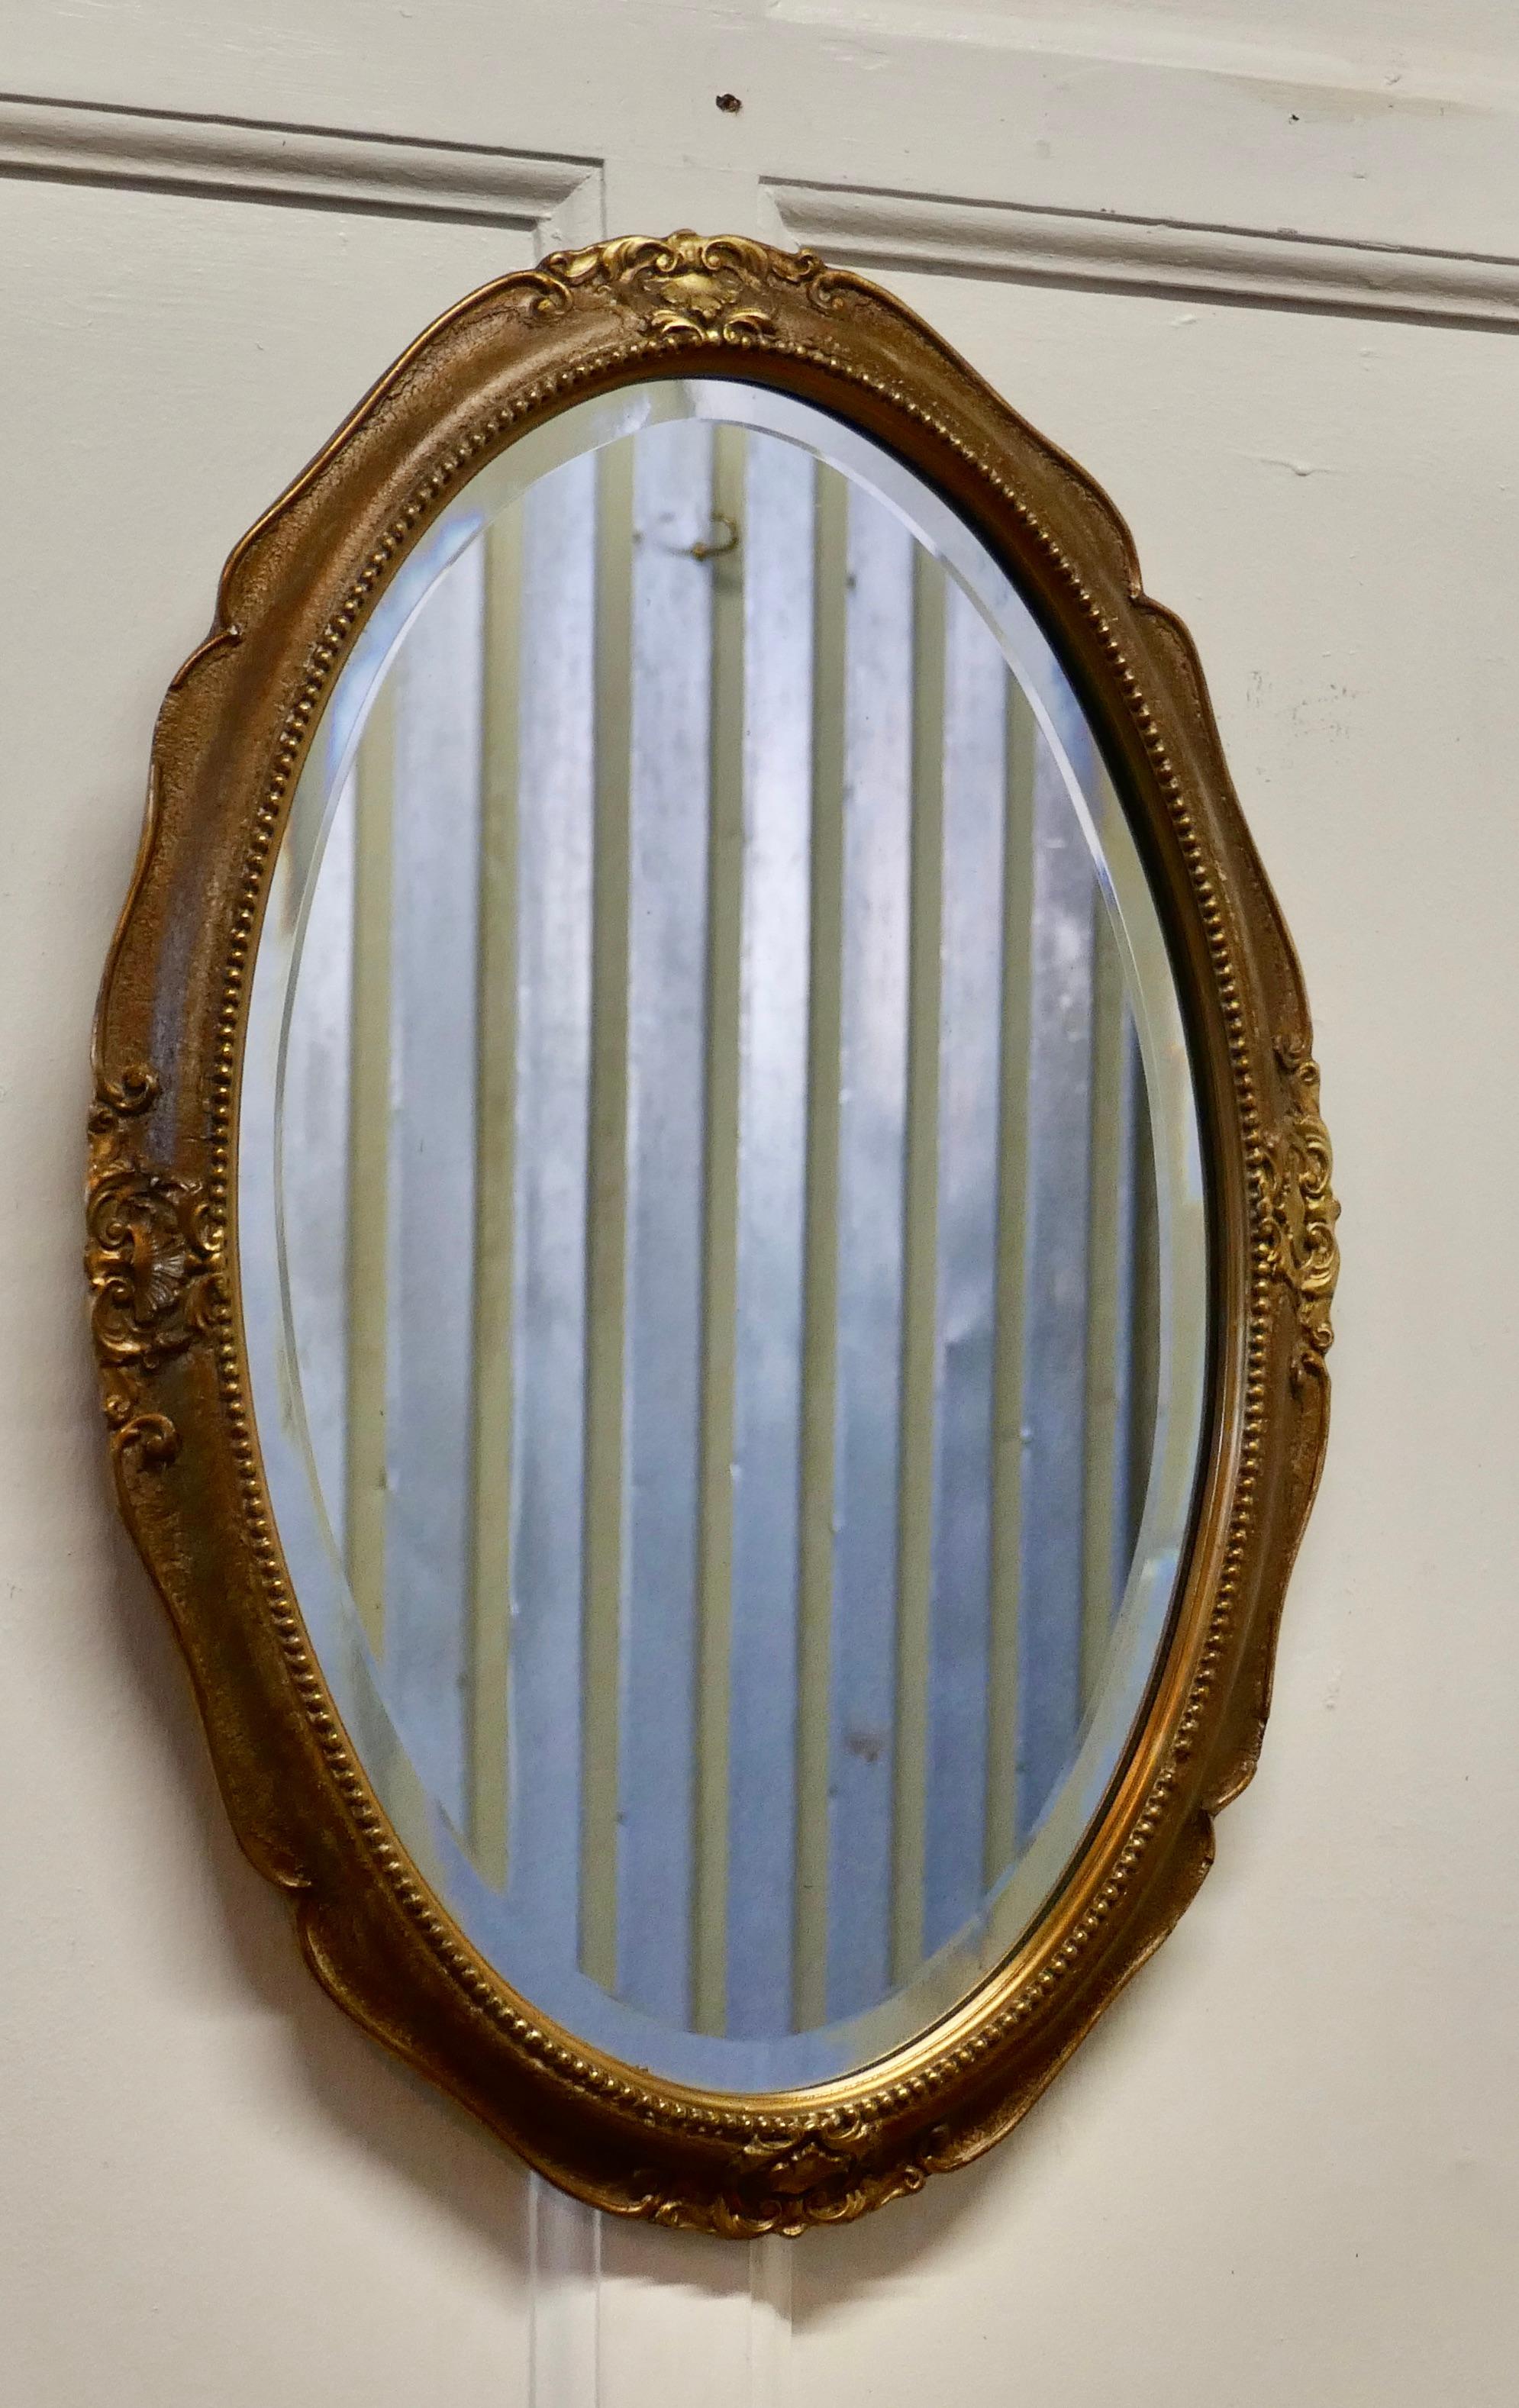 Ovaler vergoldeter Art-Déco-Wandspiegel

Der Spiegel hat einen sehr attraktiven 2 breiten vergoldeten Rahmen im Rokoko-Stil mit Verzierungen. 
Es handelt sich um ein charmantes Stück mit abgeschrägtem Glas, das sich in gutem Zustand befindet